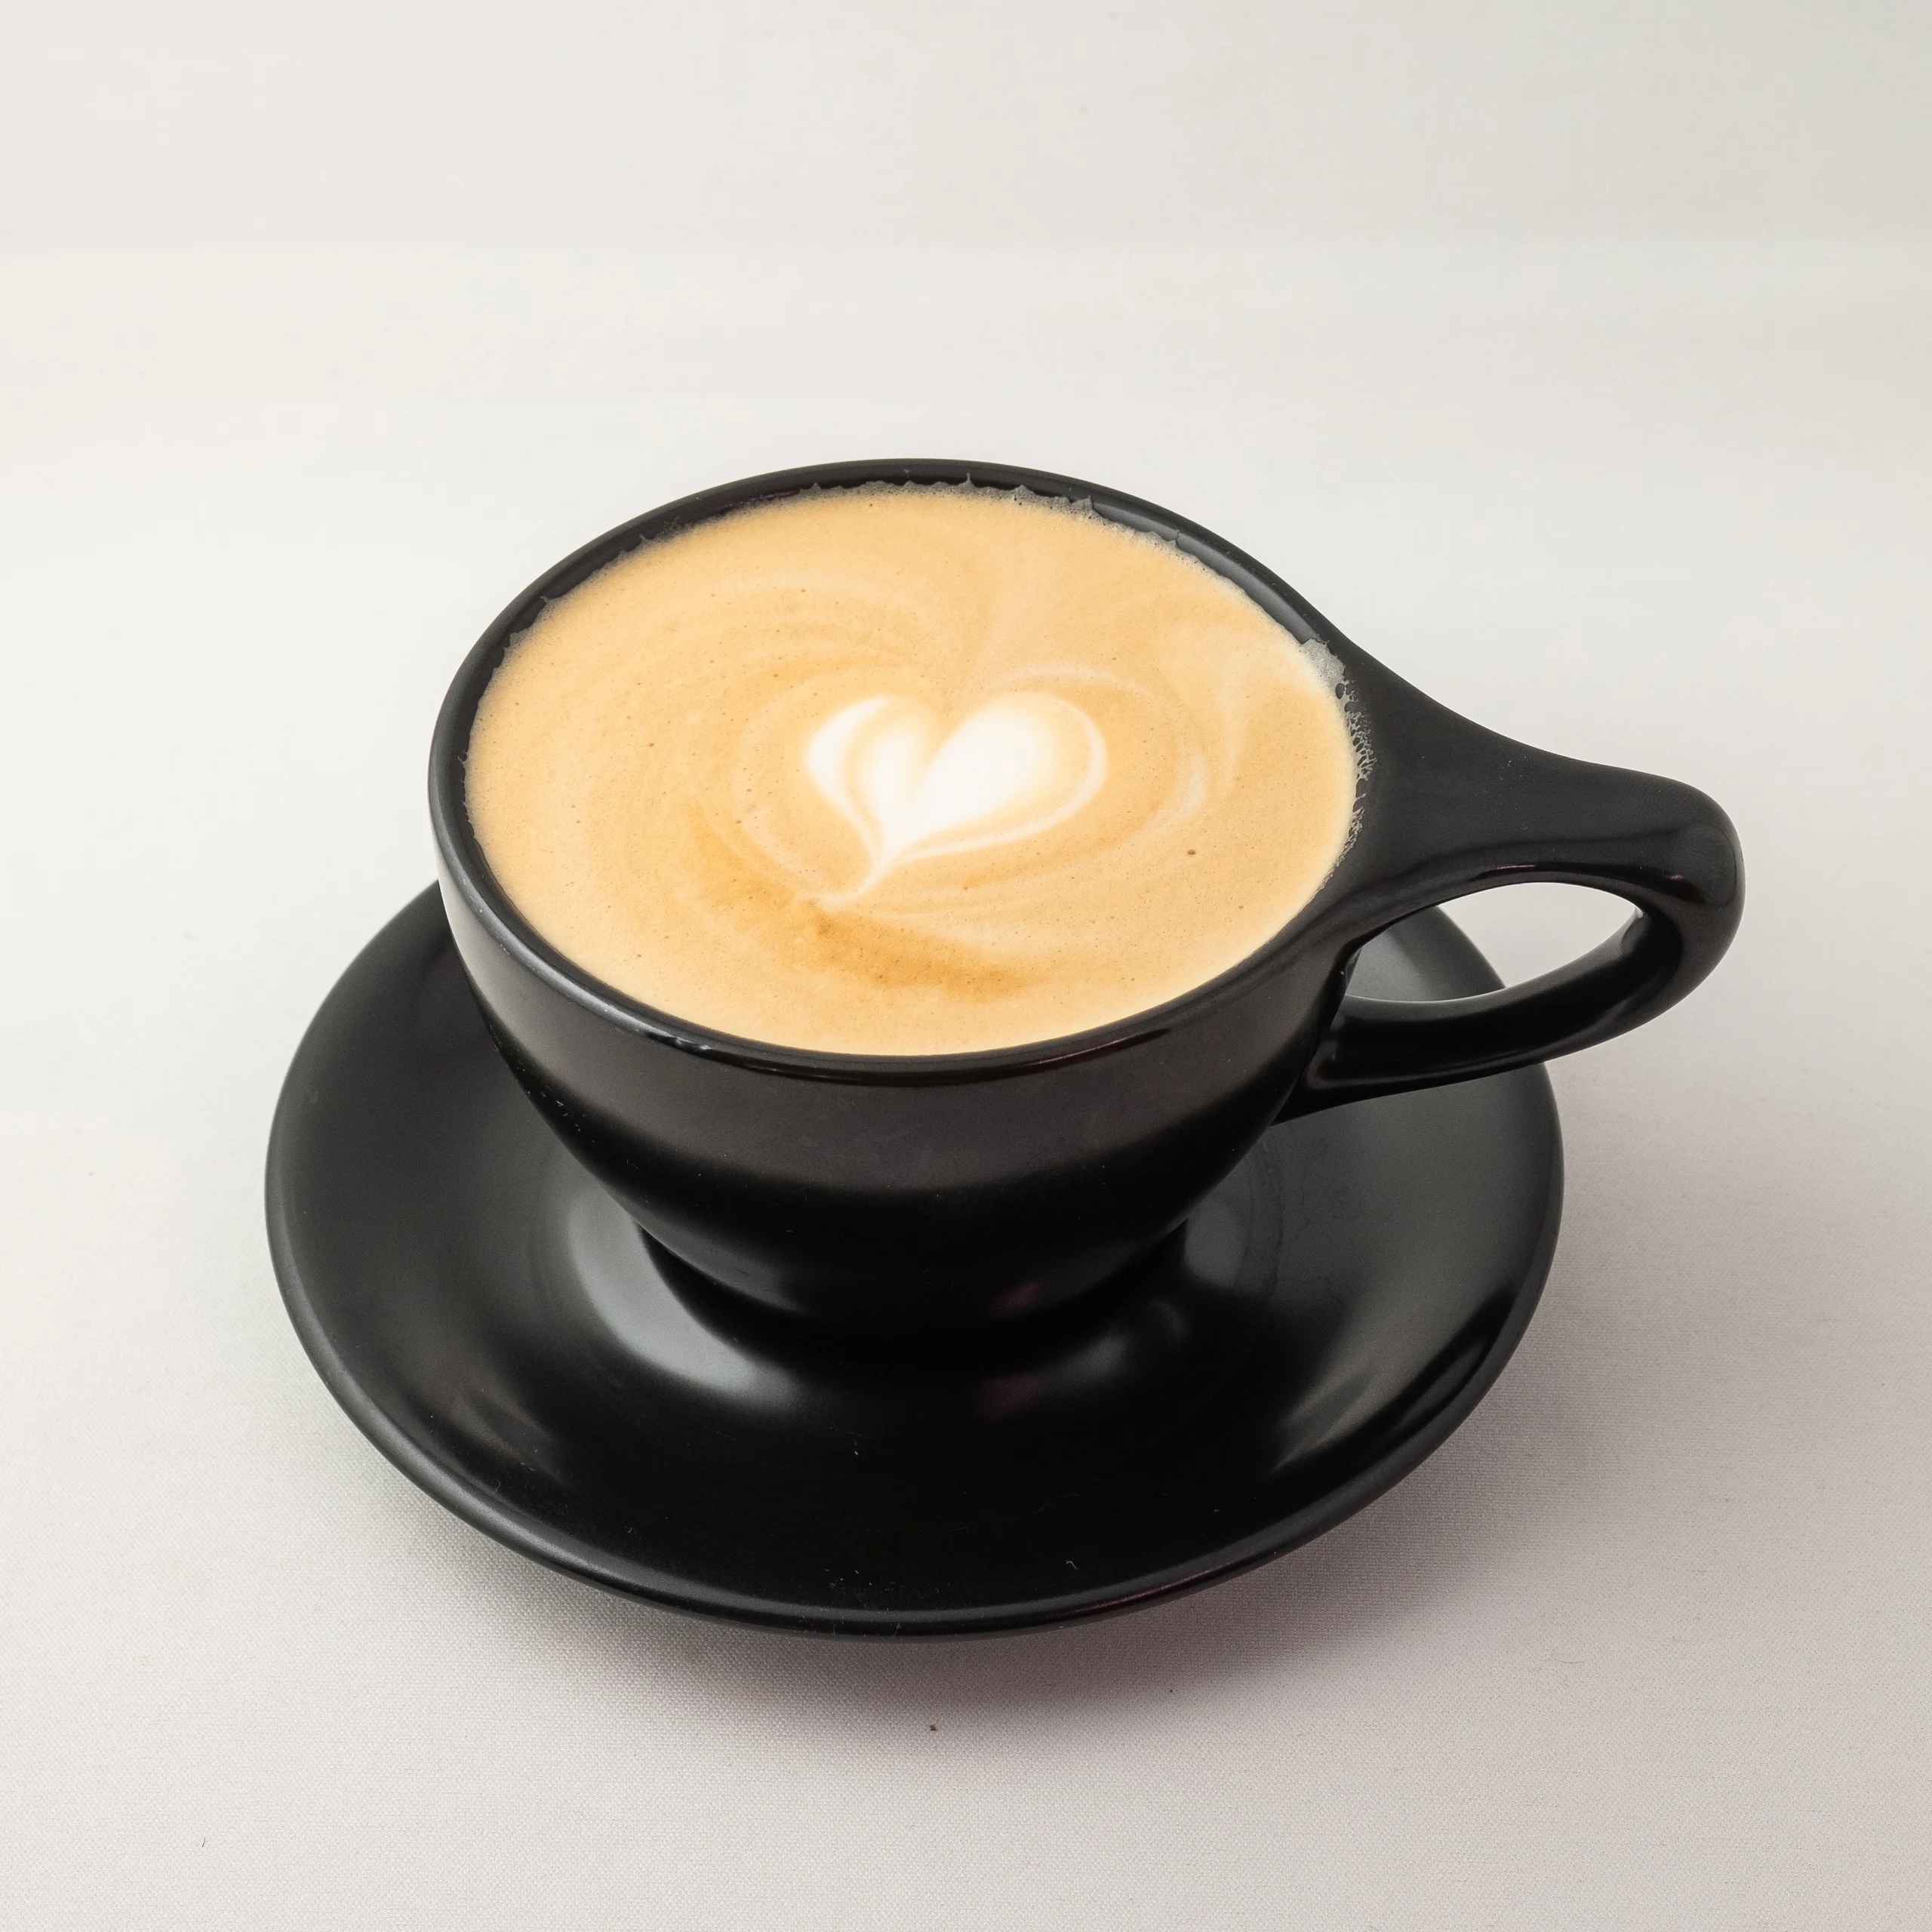 A latte in a black mug.